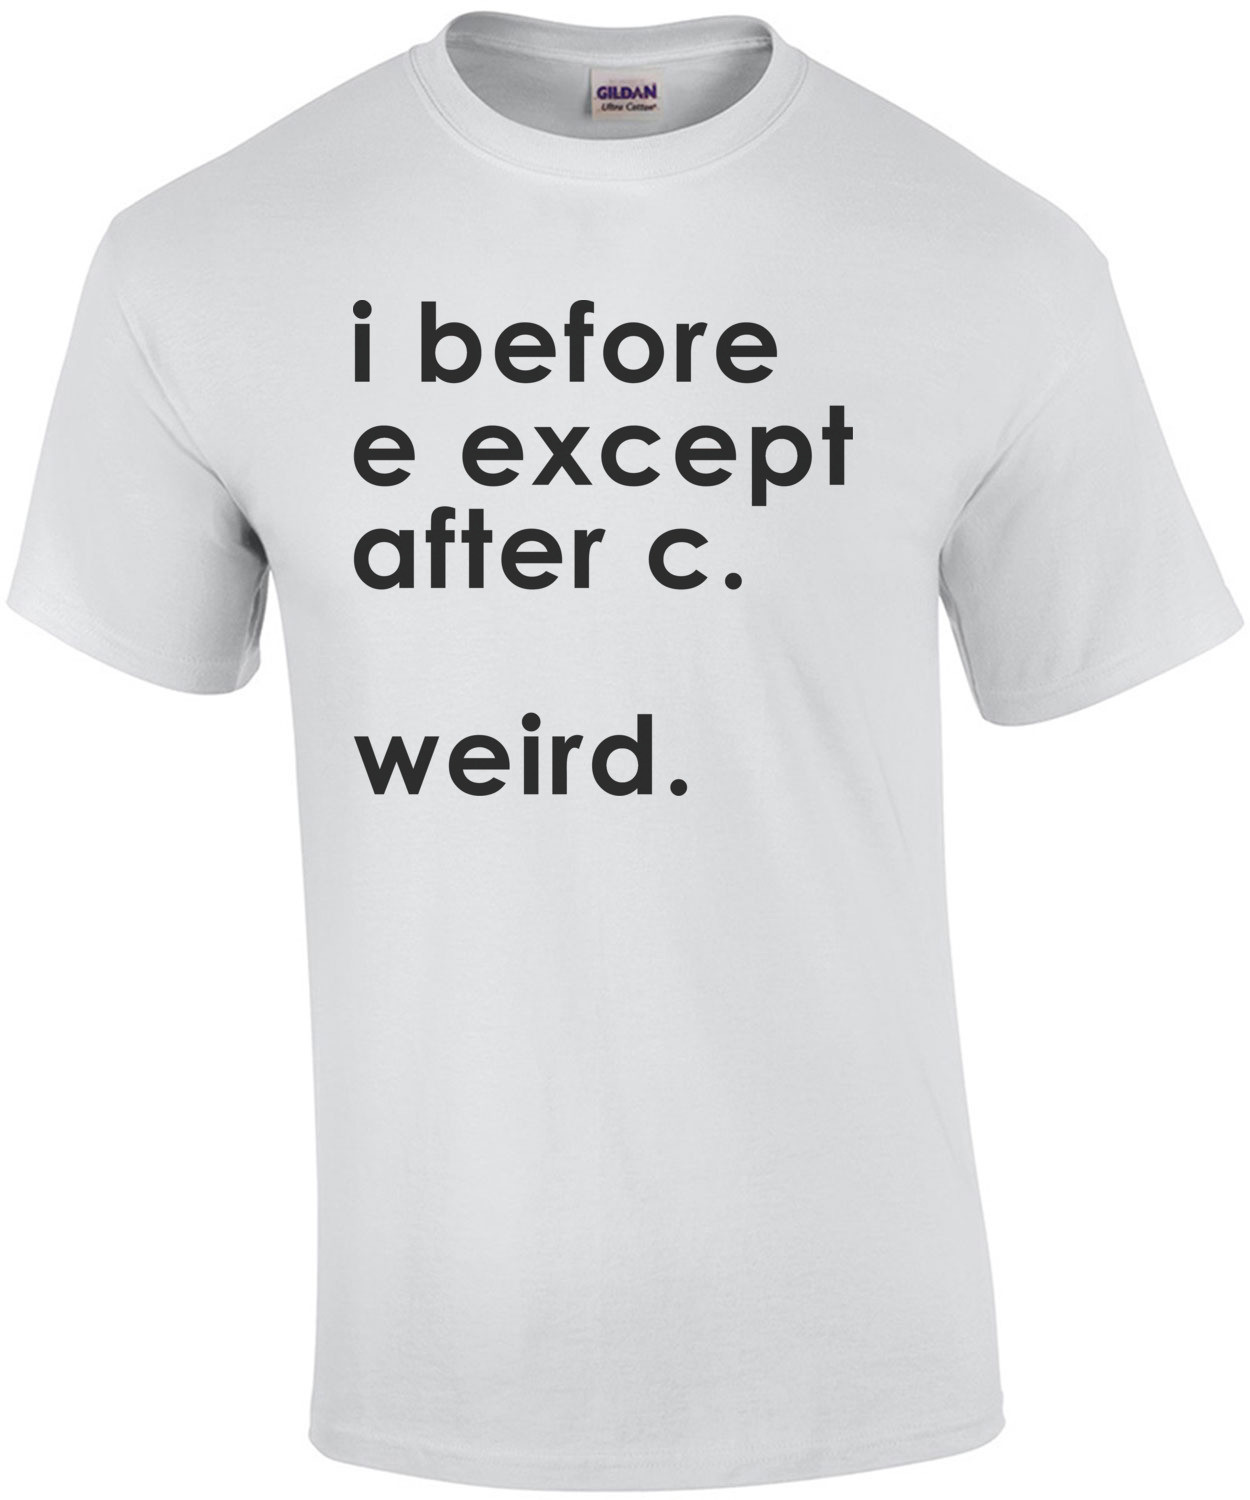 i before e except after c. weird? Shirt